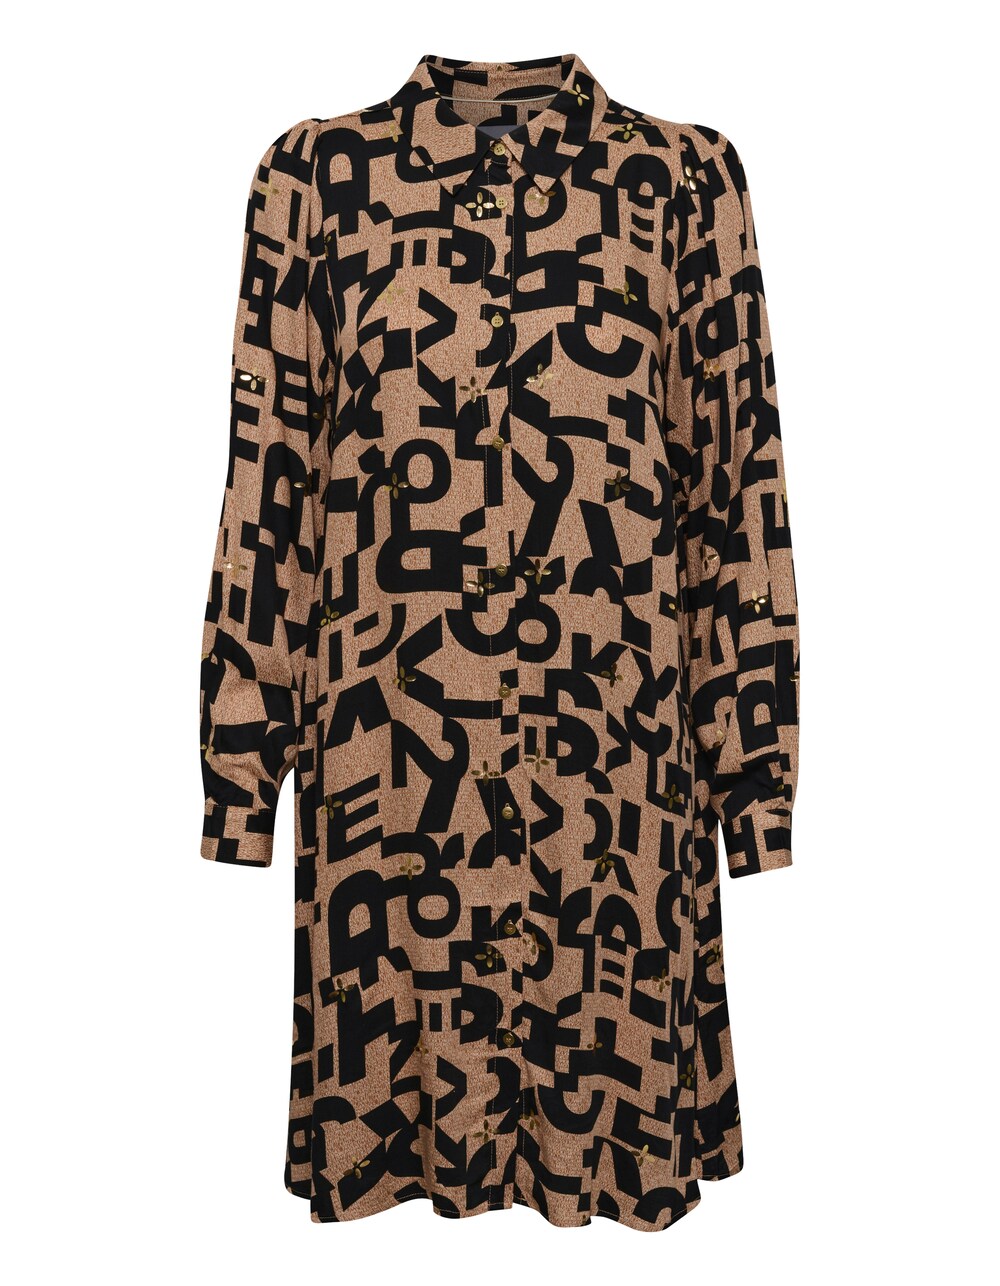 Рубашка-платье CULTURE Toya, коричневый toya набор щупов toya 20 предметов 0 05 1 0 мм 15200